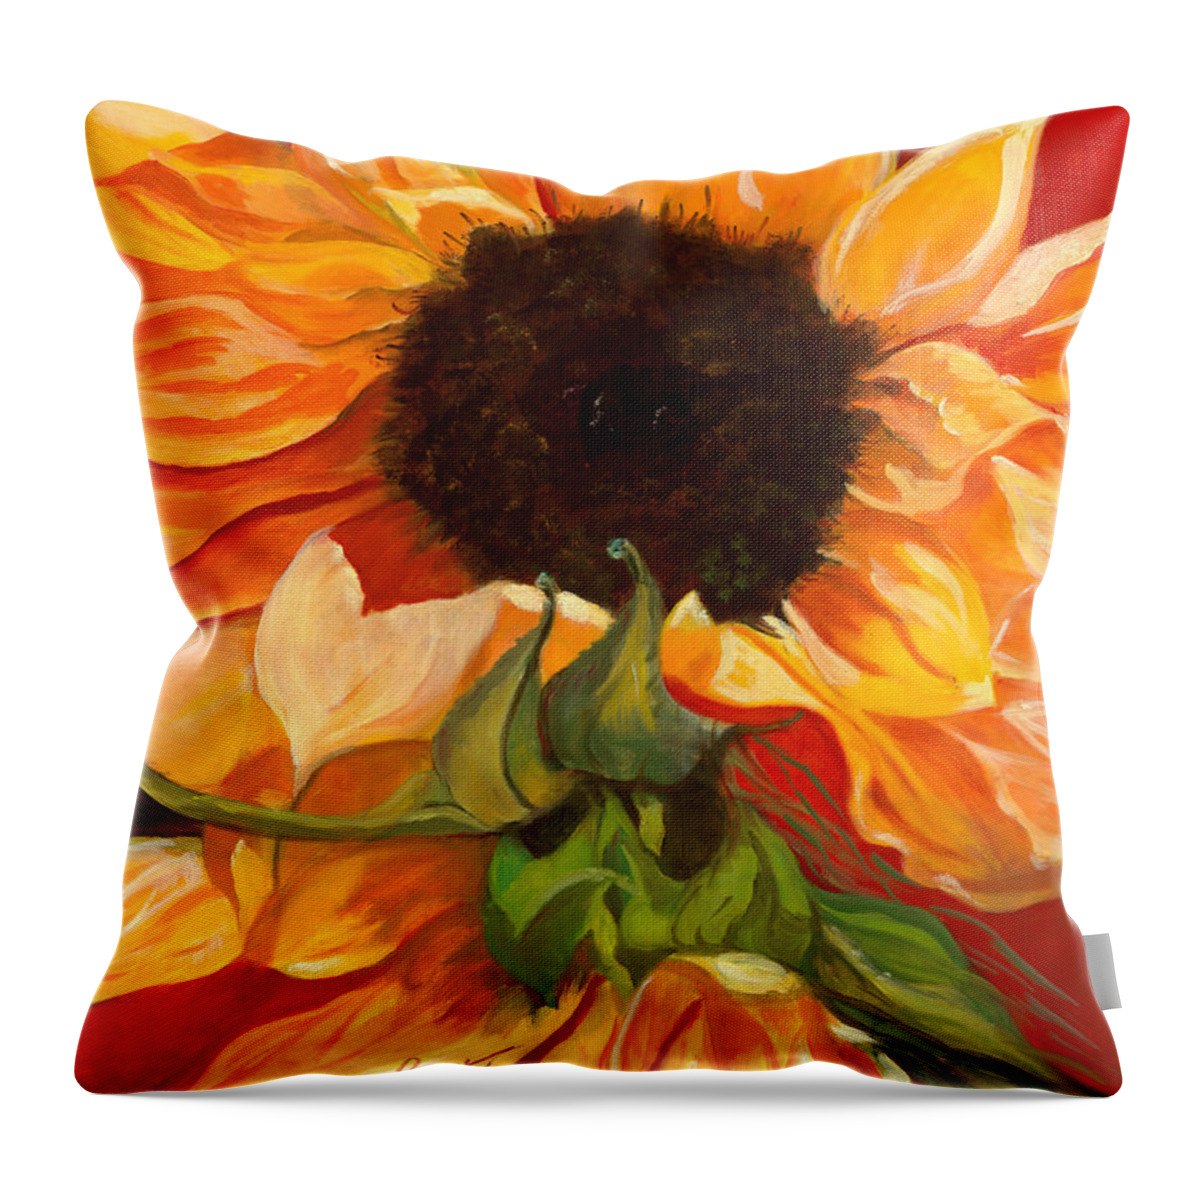 Autumn Throw Pillow featuring the painting Sun Dancer by Juliette Becker